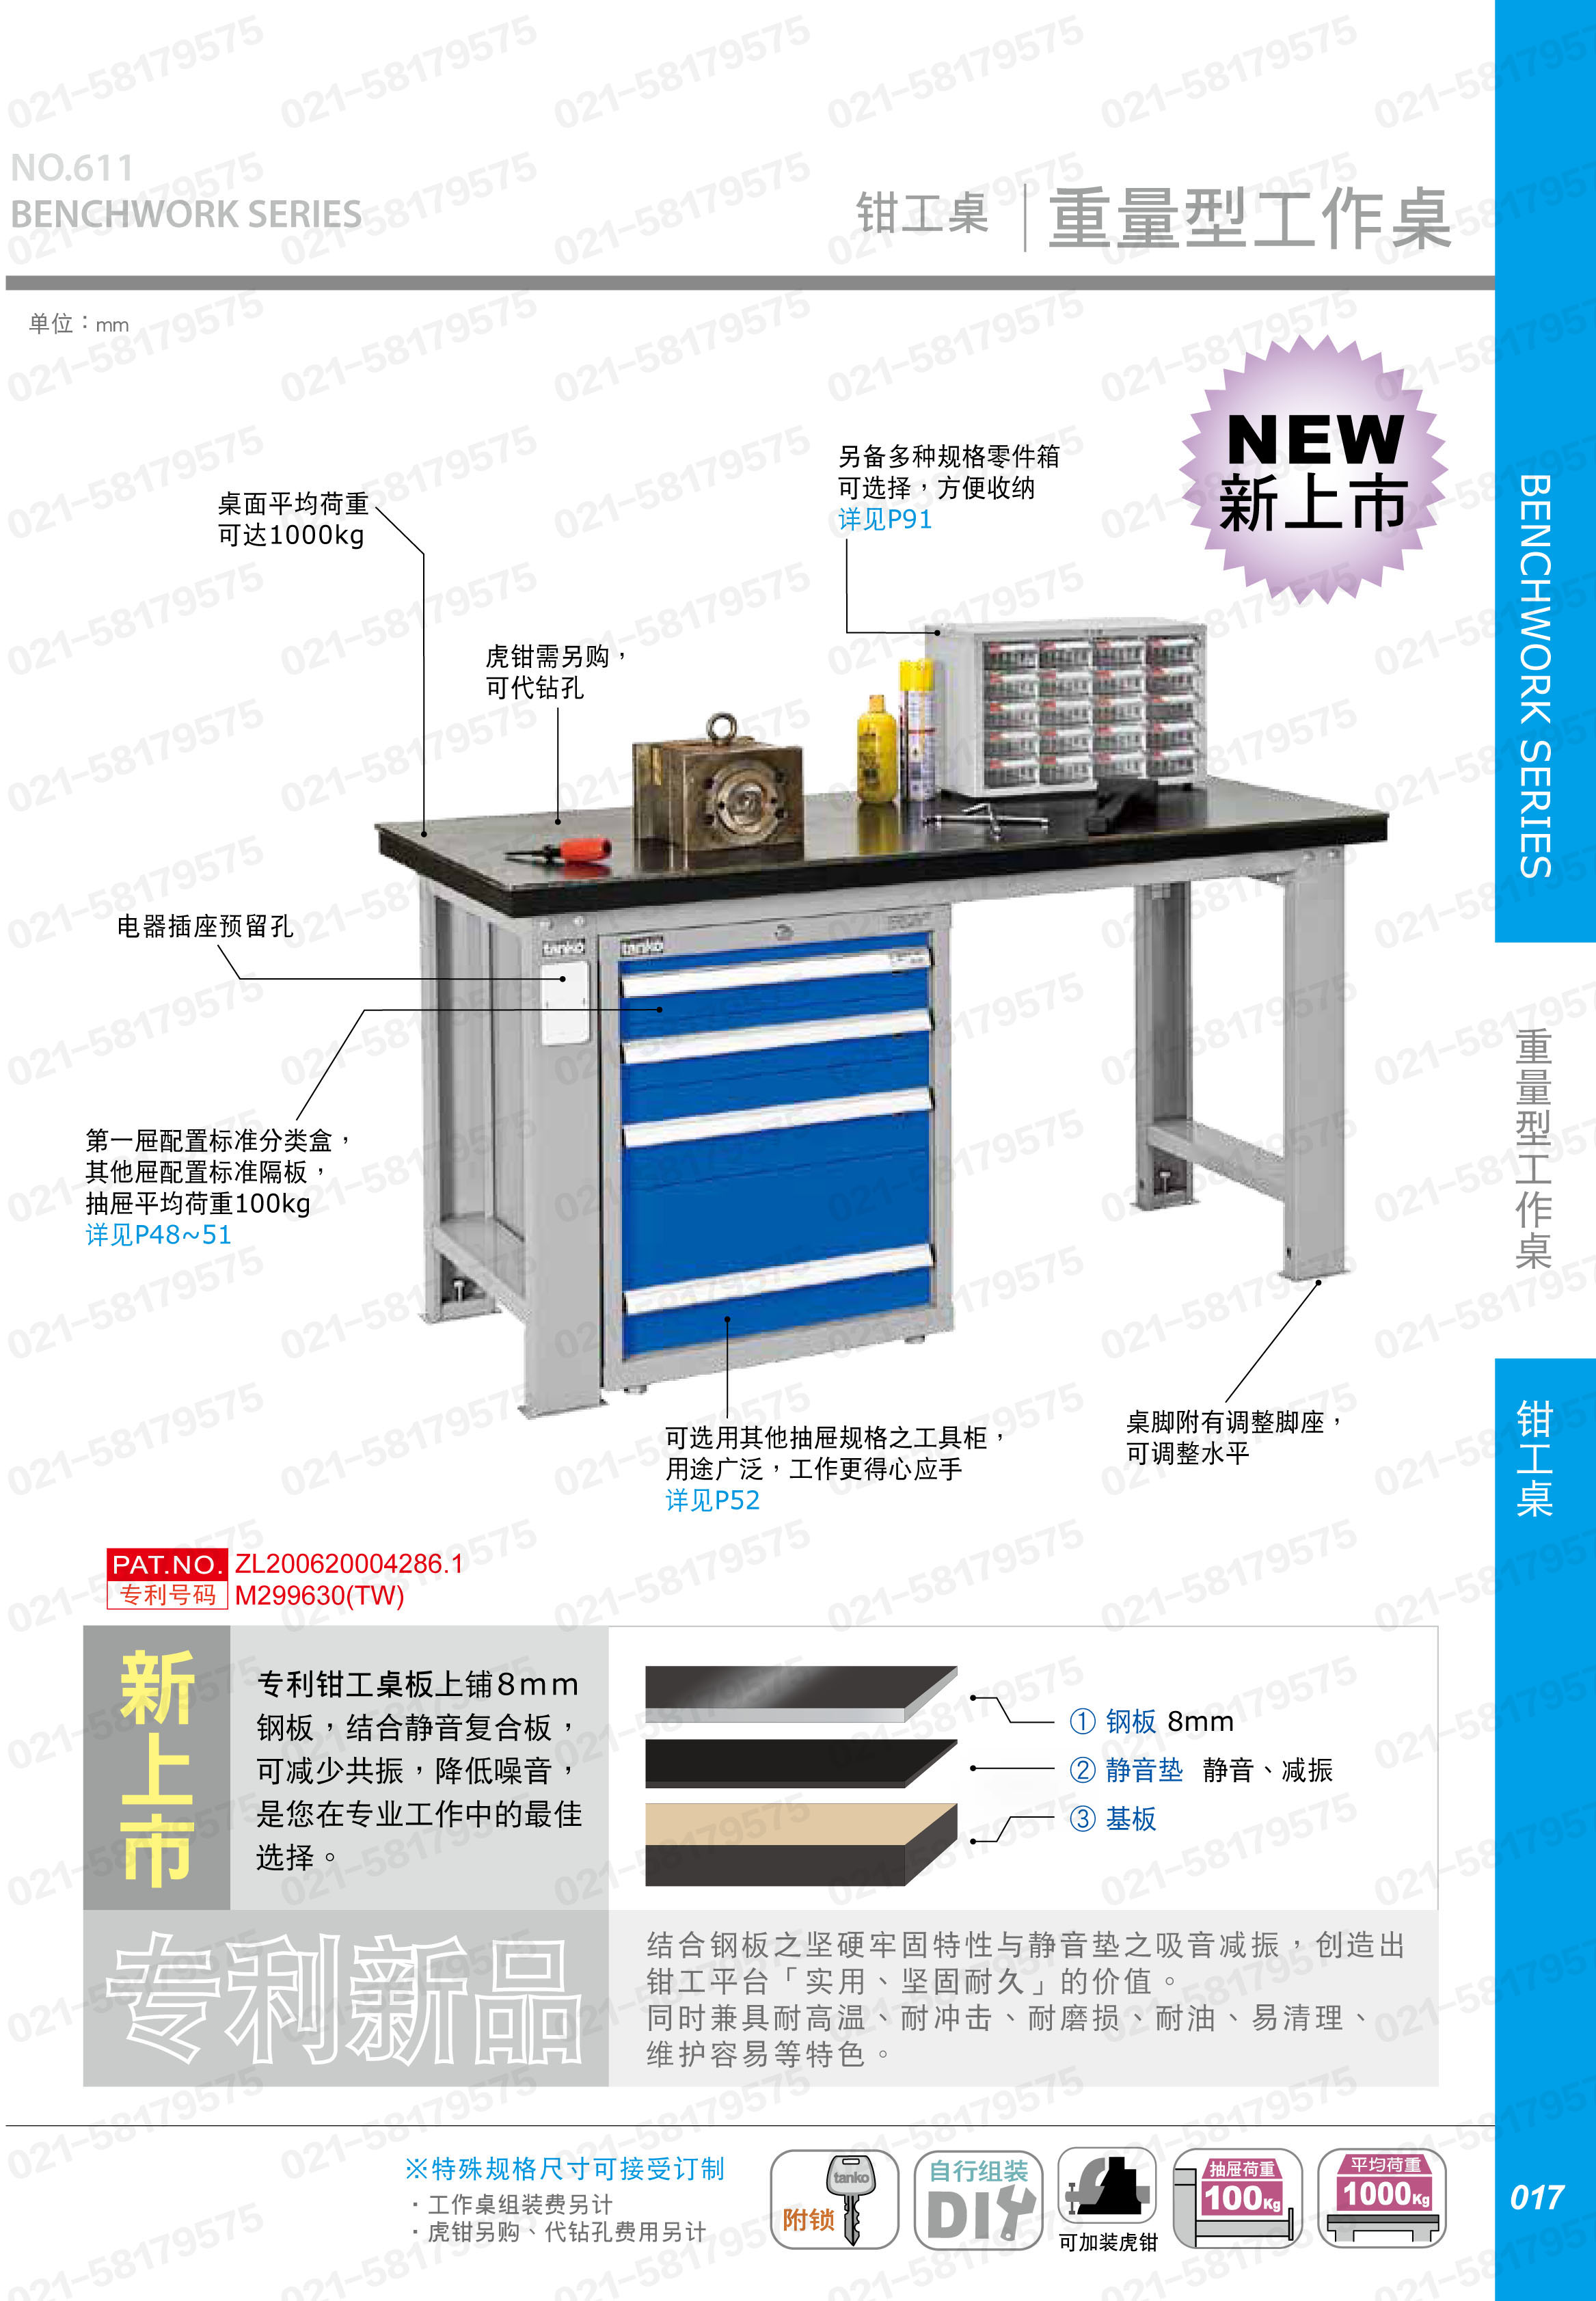 重型工作桌1800×750×800mm平均承重1吨耐磨桌板 横置3个抽屉,WAT-6203F,3M0883